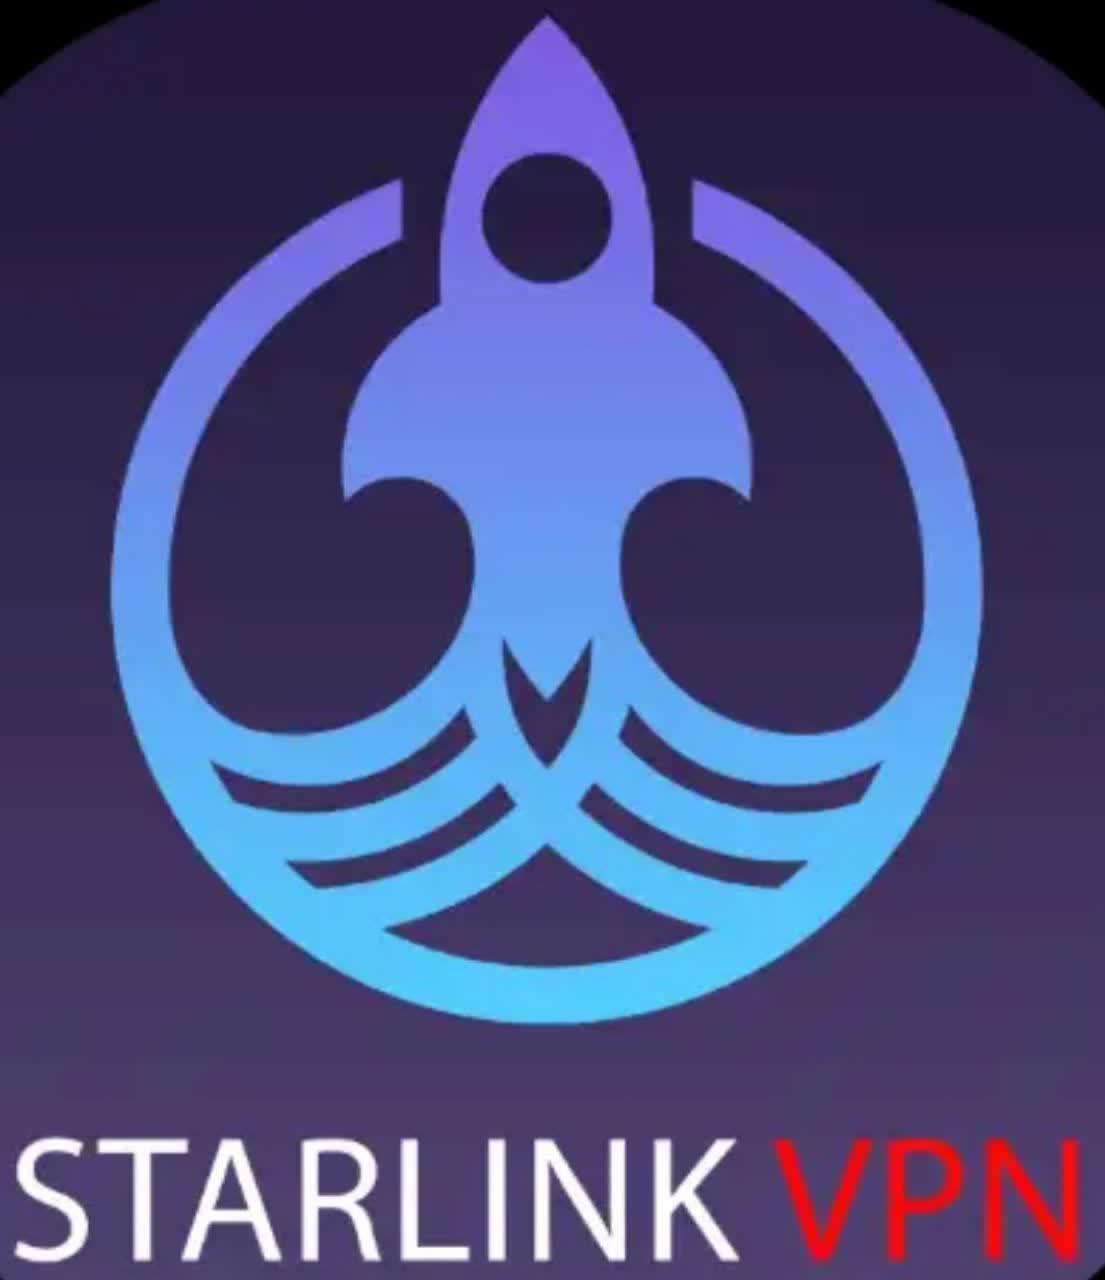 دانلود فیلتر شکن Starlink Vpn با لینک مستقیم برای اندروید